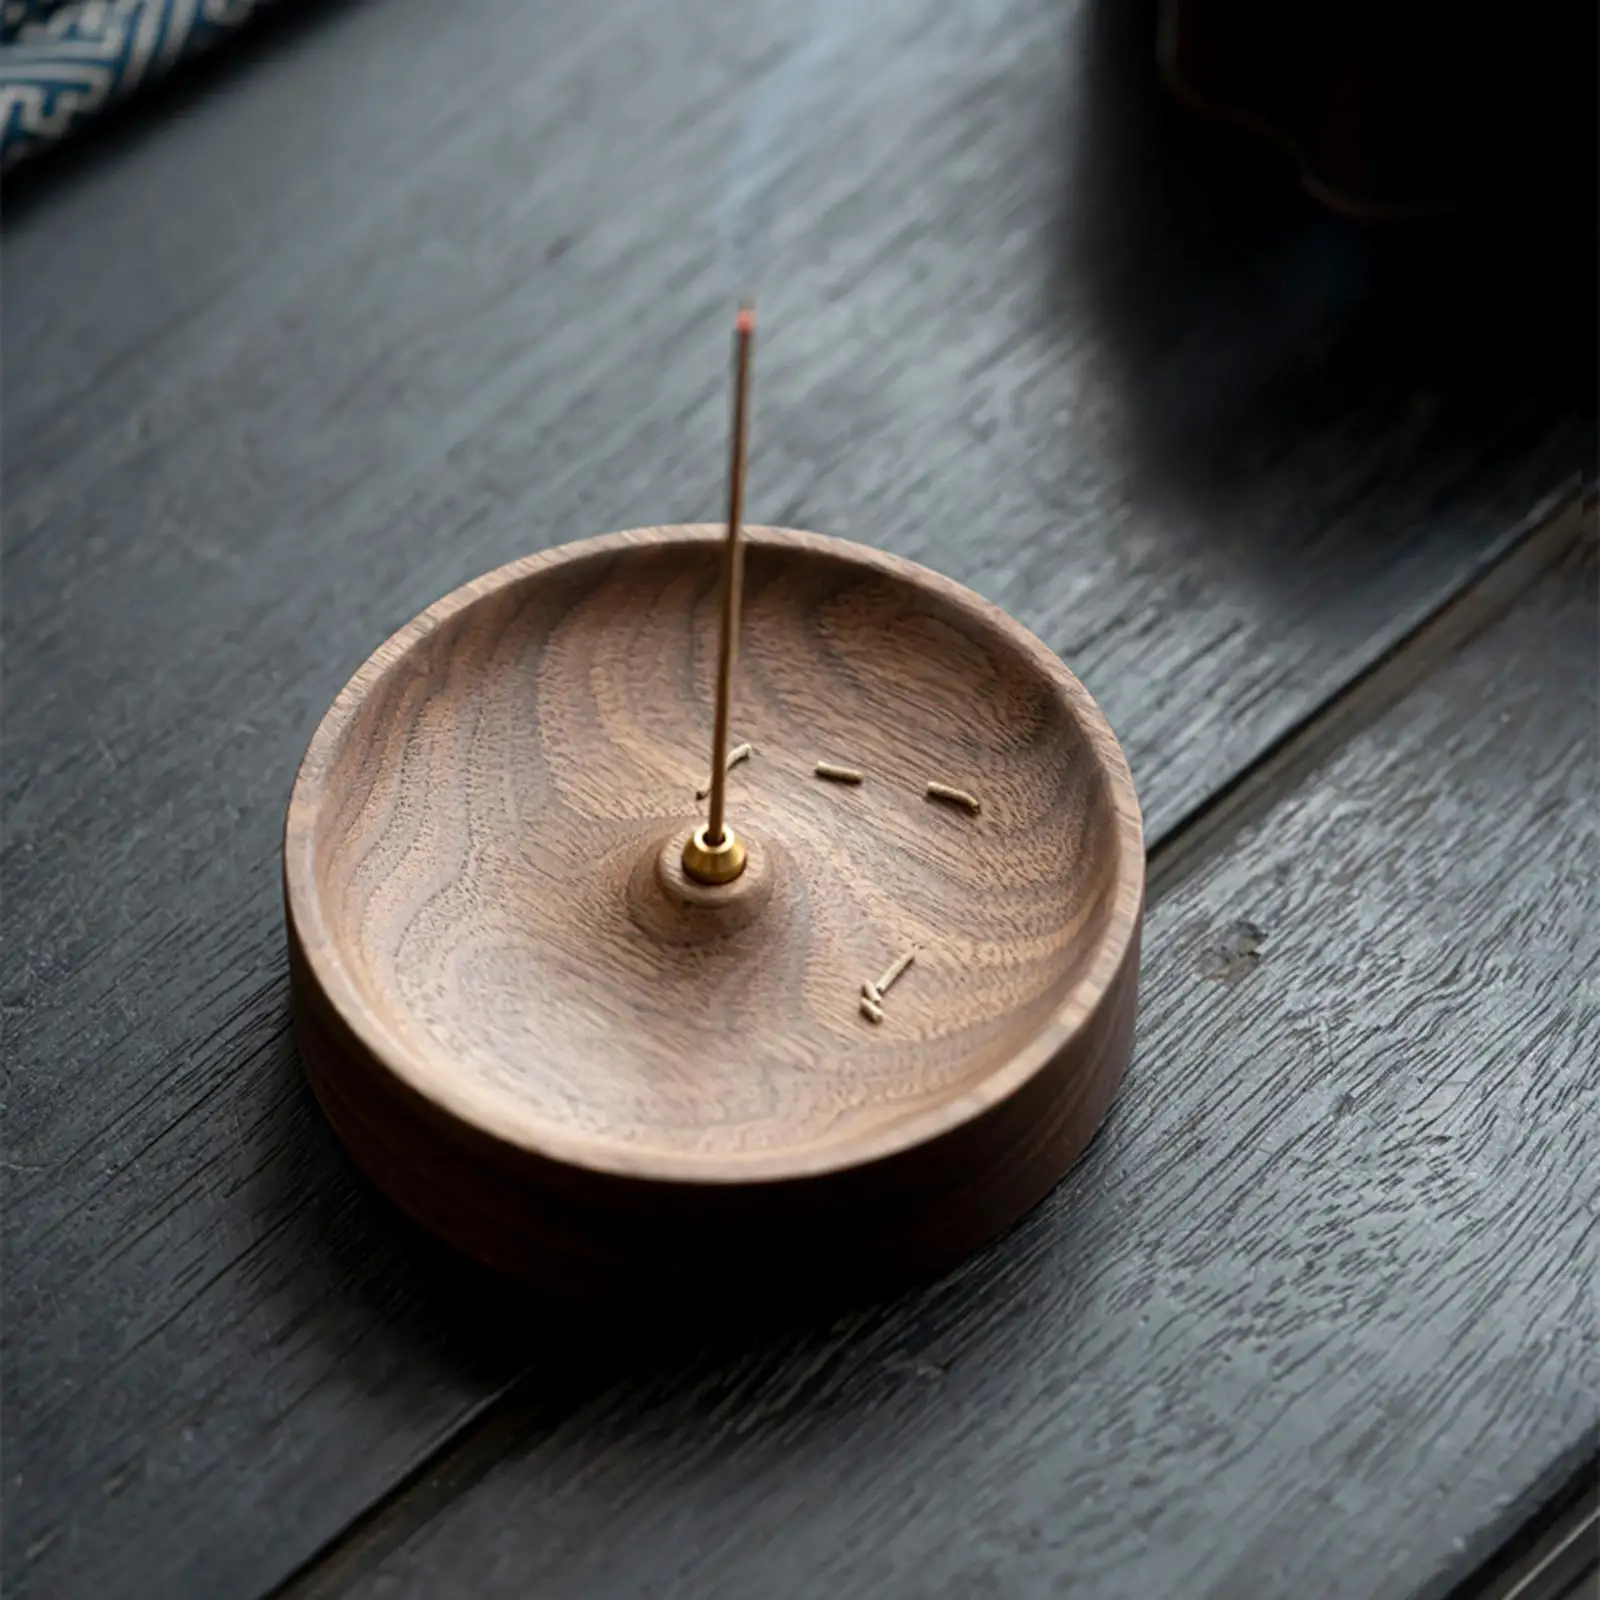 Wooden Round Incense Burner Incense Sticks Holder Ash Catcher Incense Bowl for Yoga Living Room Teahouse Meditation Home Decor